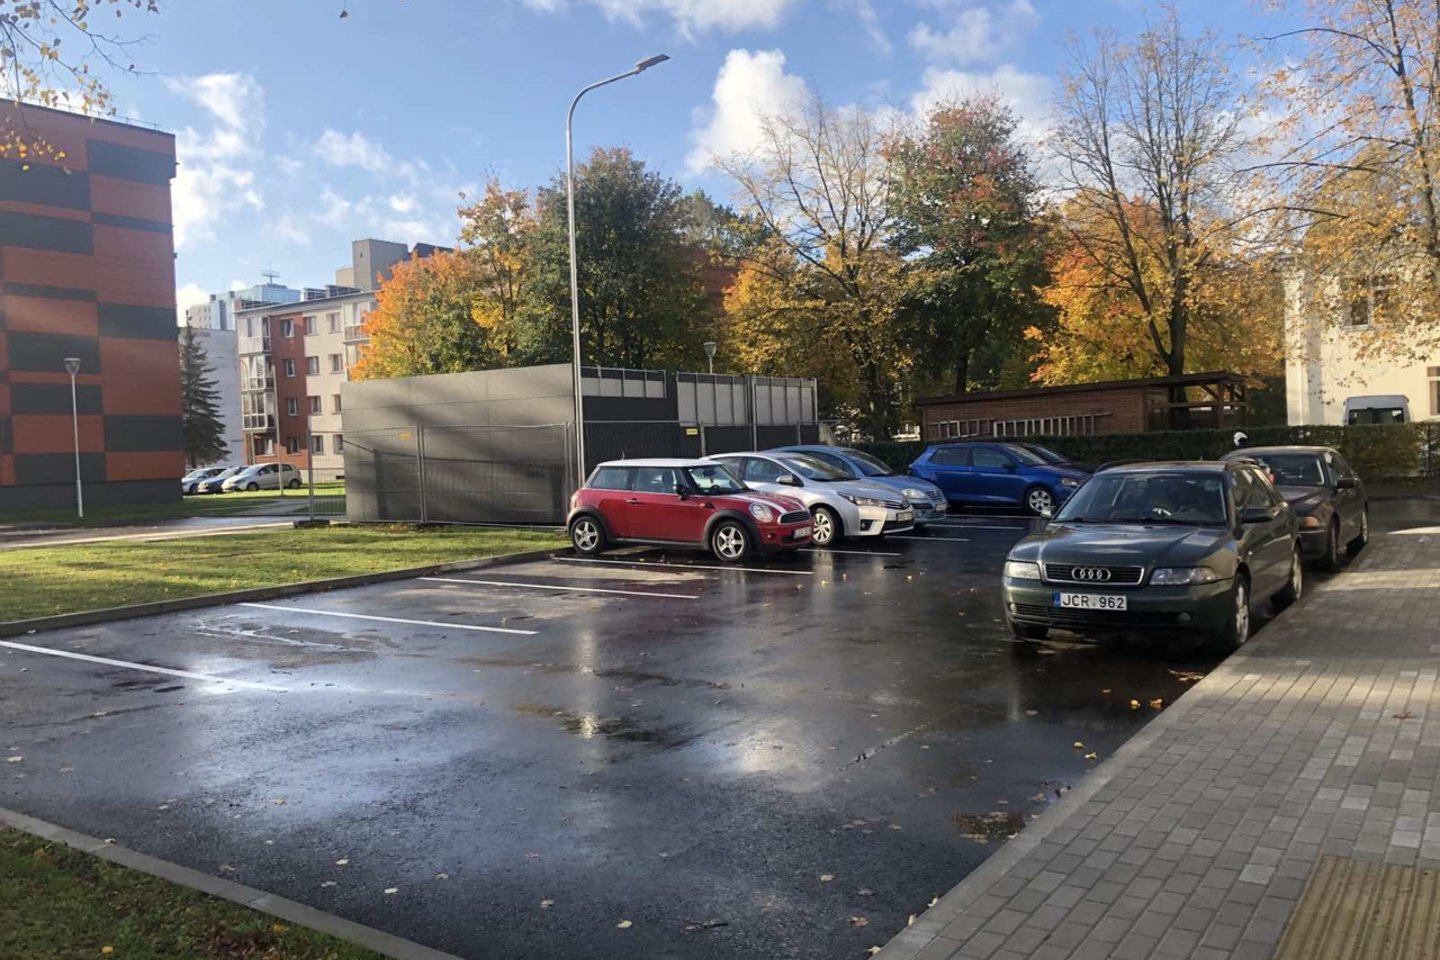  Kiemuose - daugiau vietos automobiliams.<br>Klaipėdos savivaldybės nuotr. 